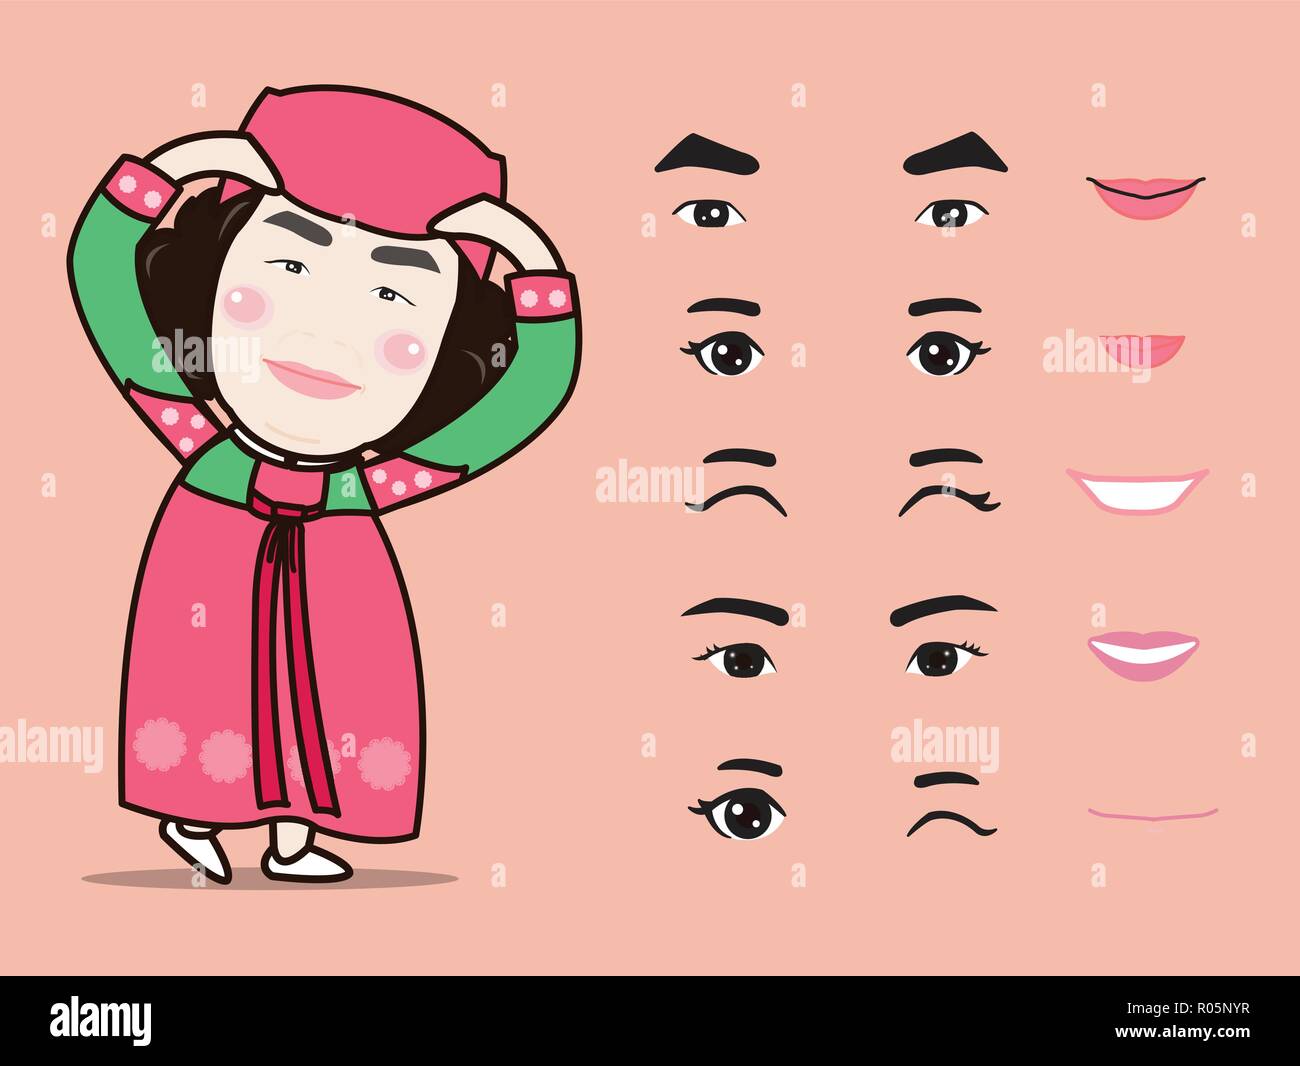 Cartoon cute traditionelles koreanisches Mädchen Charakter pack Gesichts Emotionen Design Elemente isoliert Vector Illustration Stock Vektor